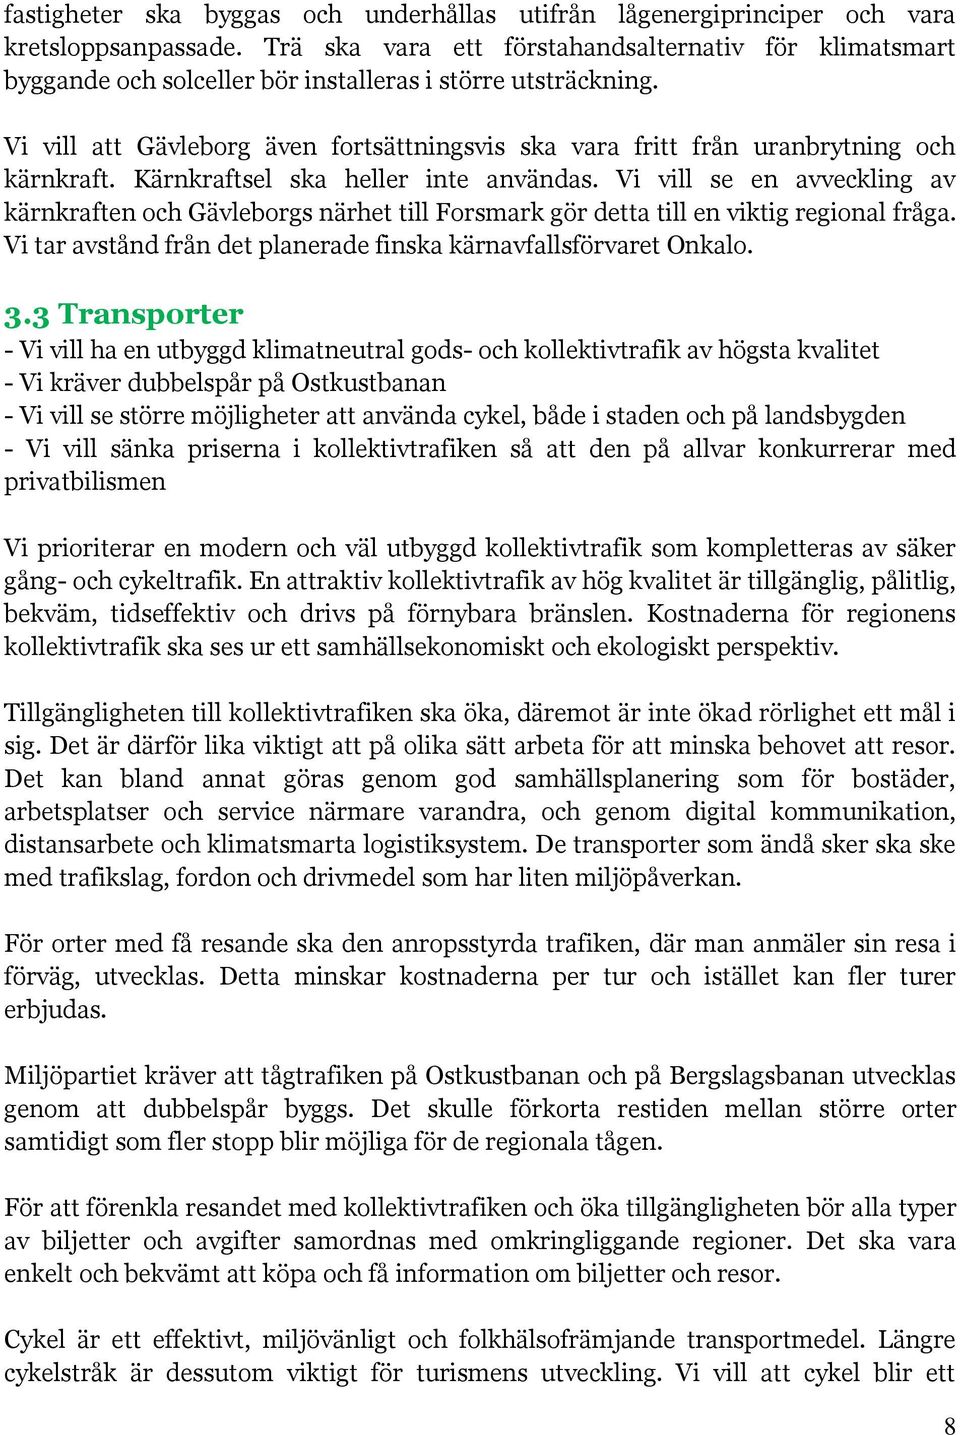 Vi vill att Gävleborg även fortsättningsvis ska vara fritt från uranbrytning och kärnkraft. Kärnkraftsel ska heller inte användas.